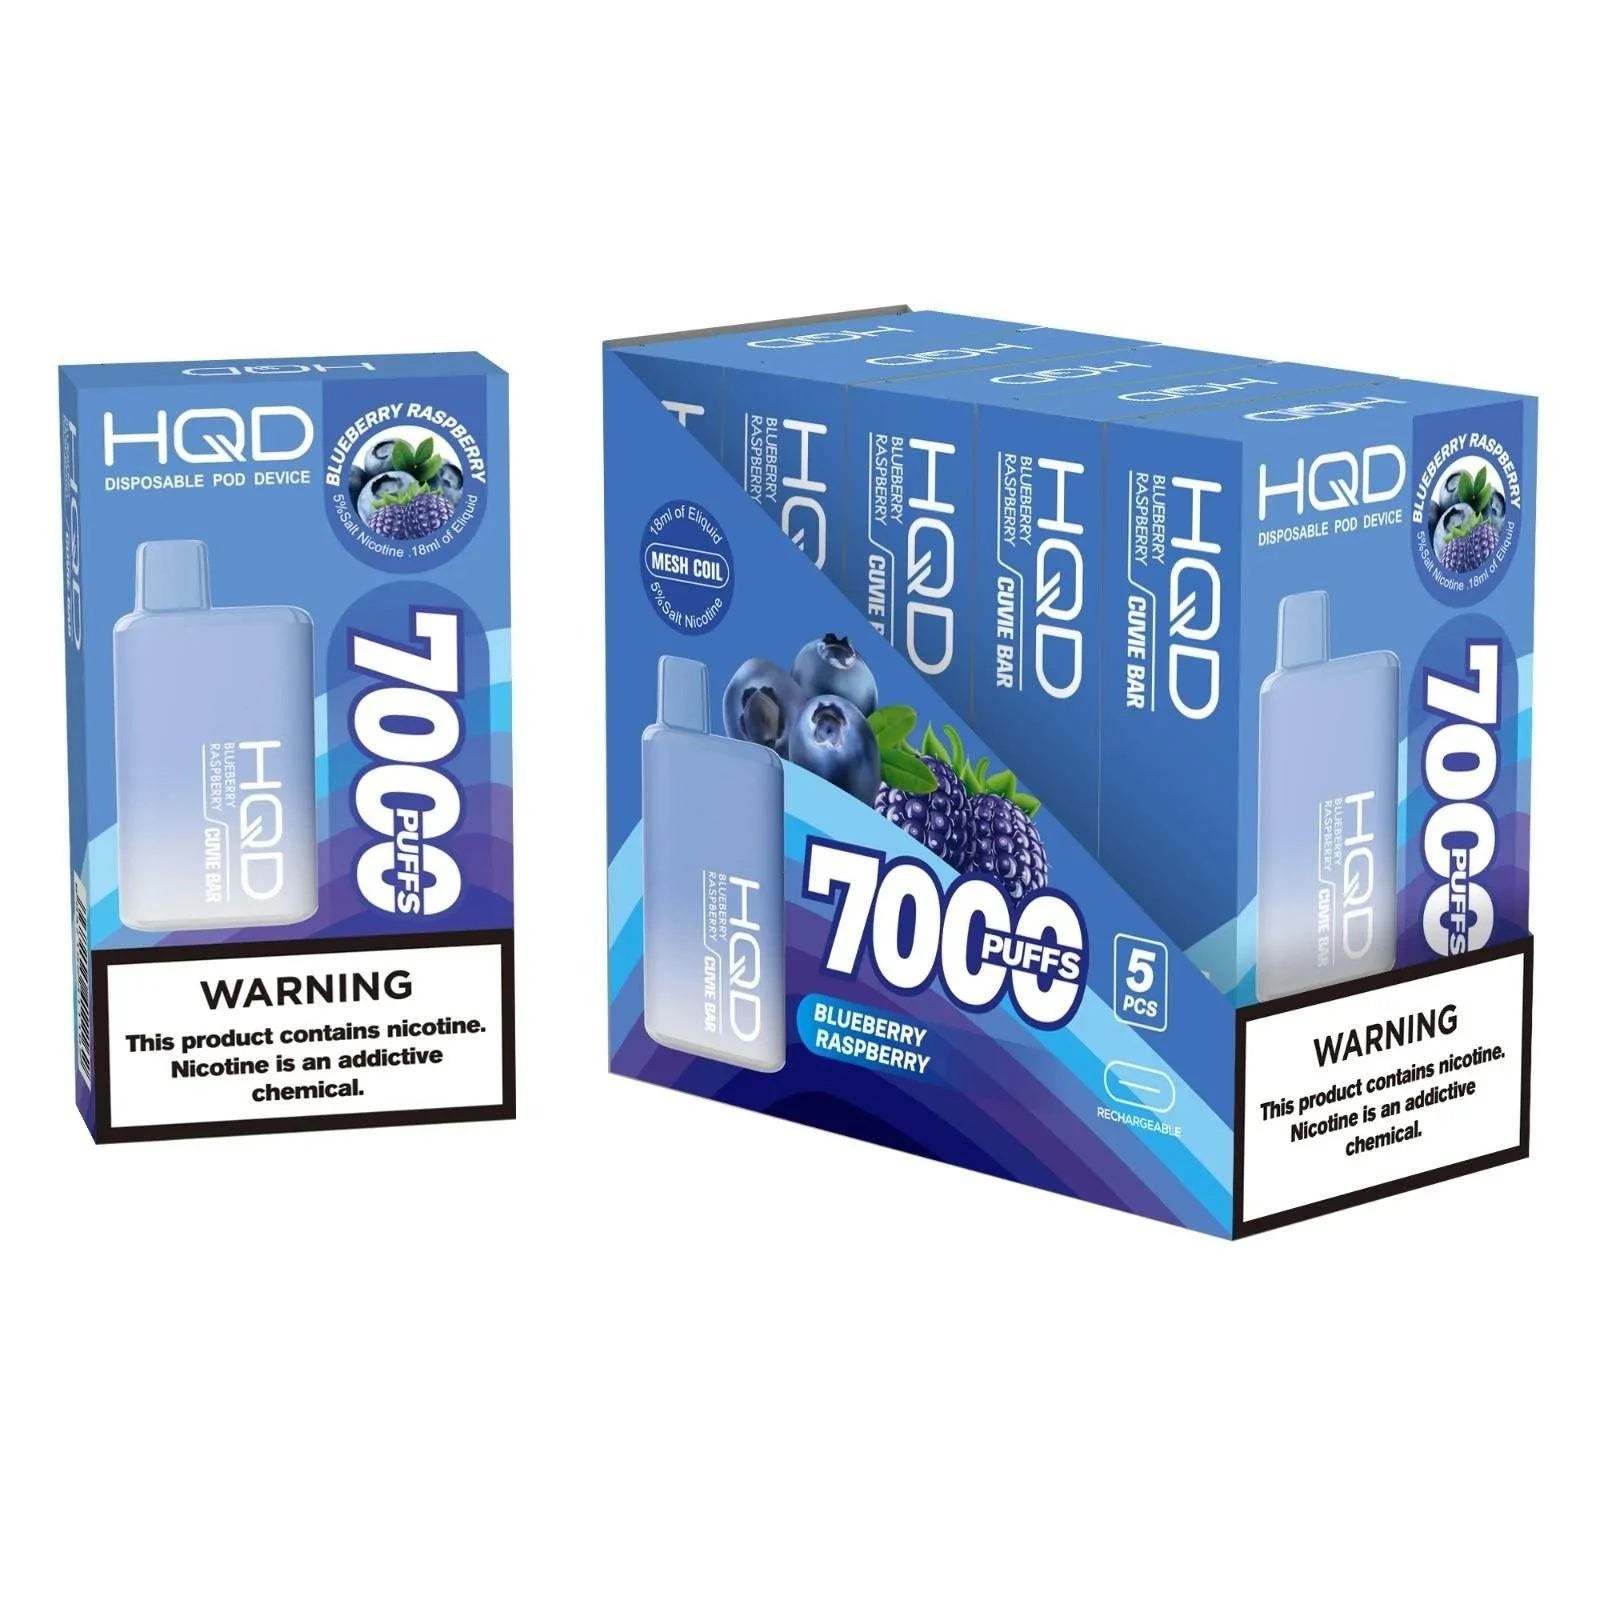 HQD Cuvie Bar 7000 Puffs Disposable Vape - 3 Pack